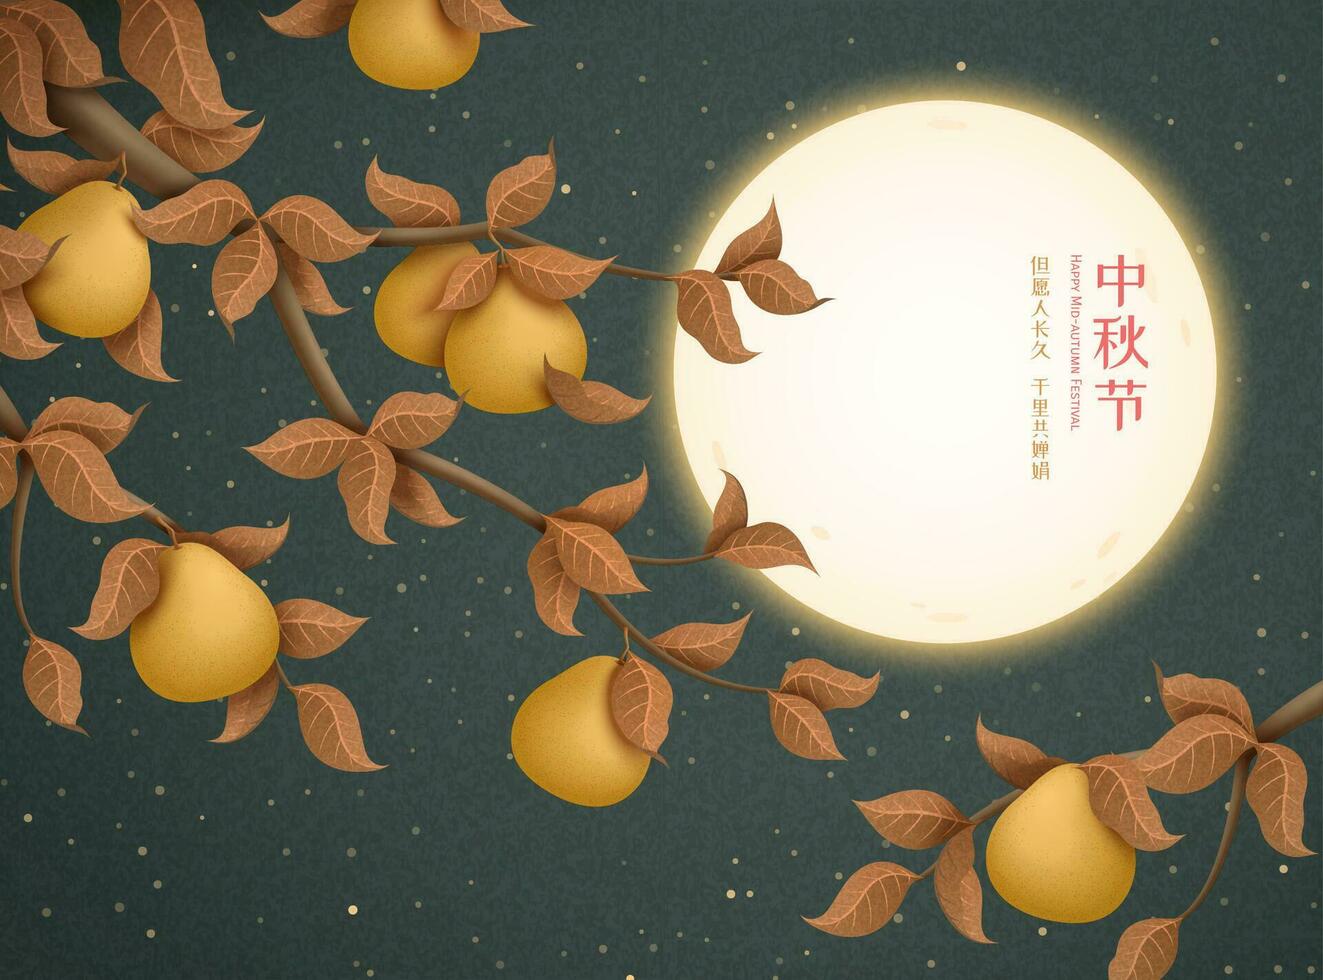 contento medio otoño festival y deseo nosotros lata compartir el belleza de el Luna juntos escrito en chino palabras, hermosa lleno Luna y pomelo árbol antecedentes vector